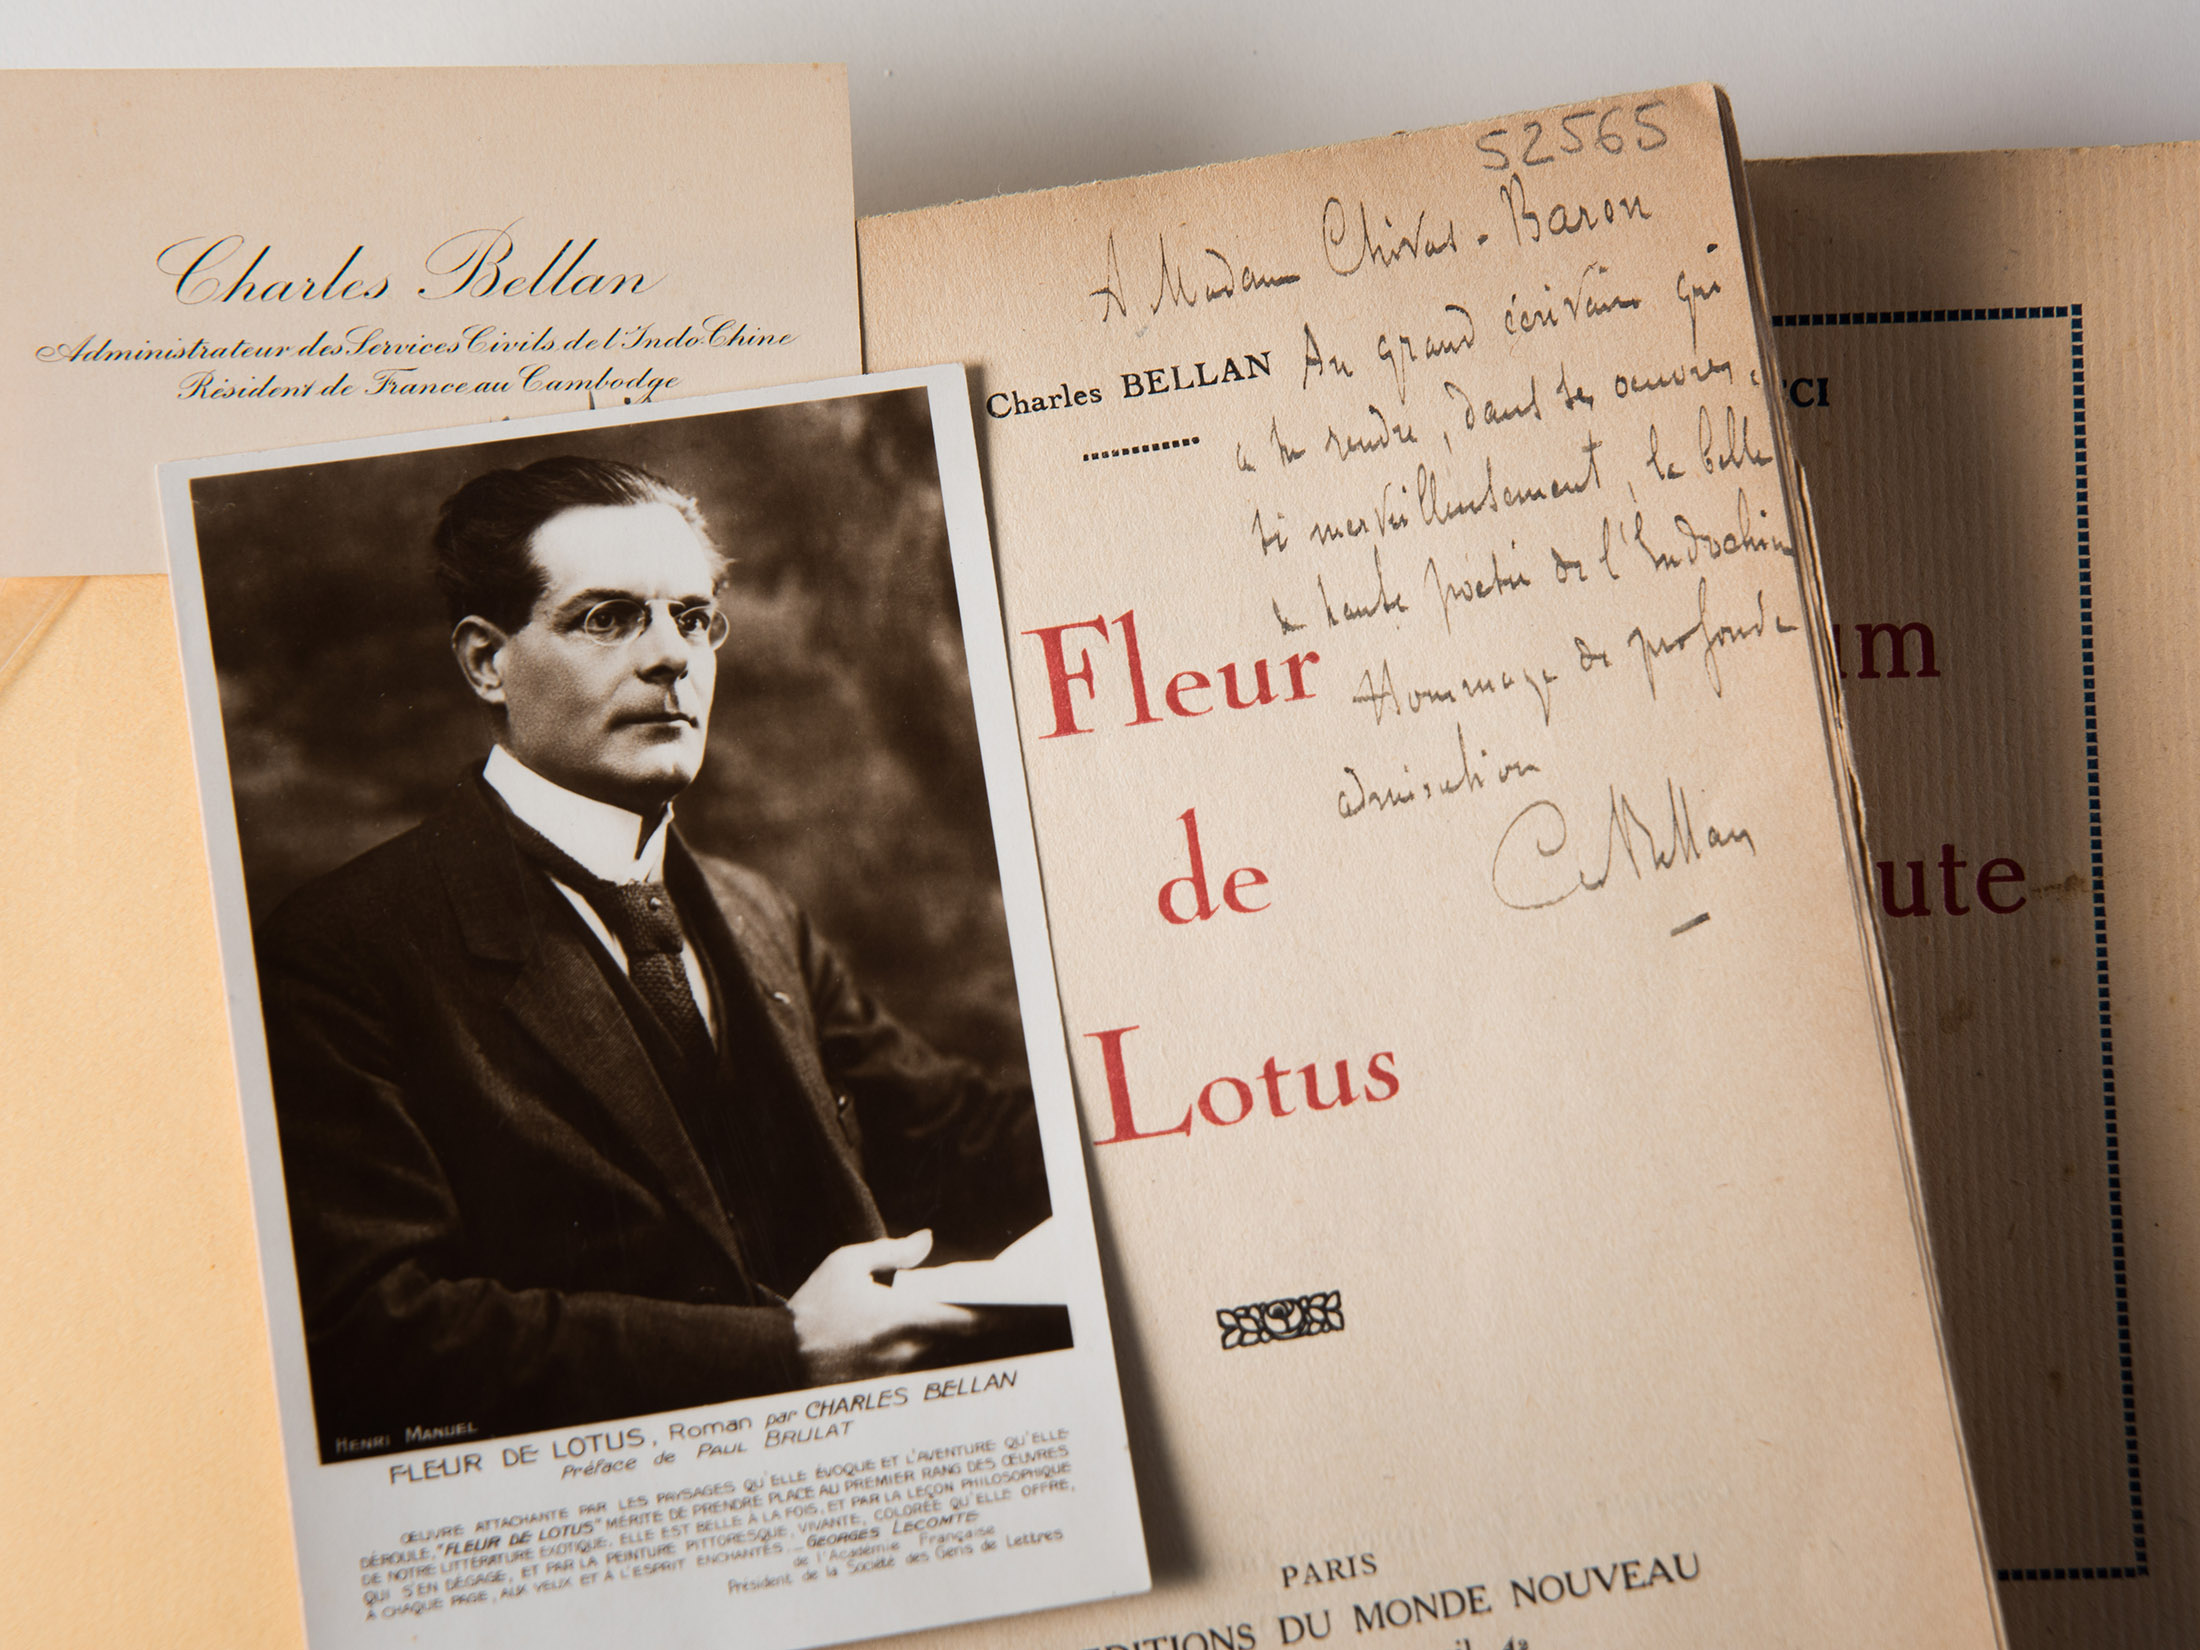 Bellan (Charles), Fleur de lotus, Paris, Editions du Monde nouveau, 1924